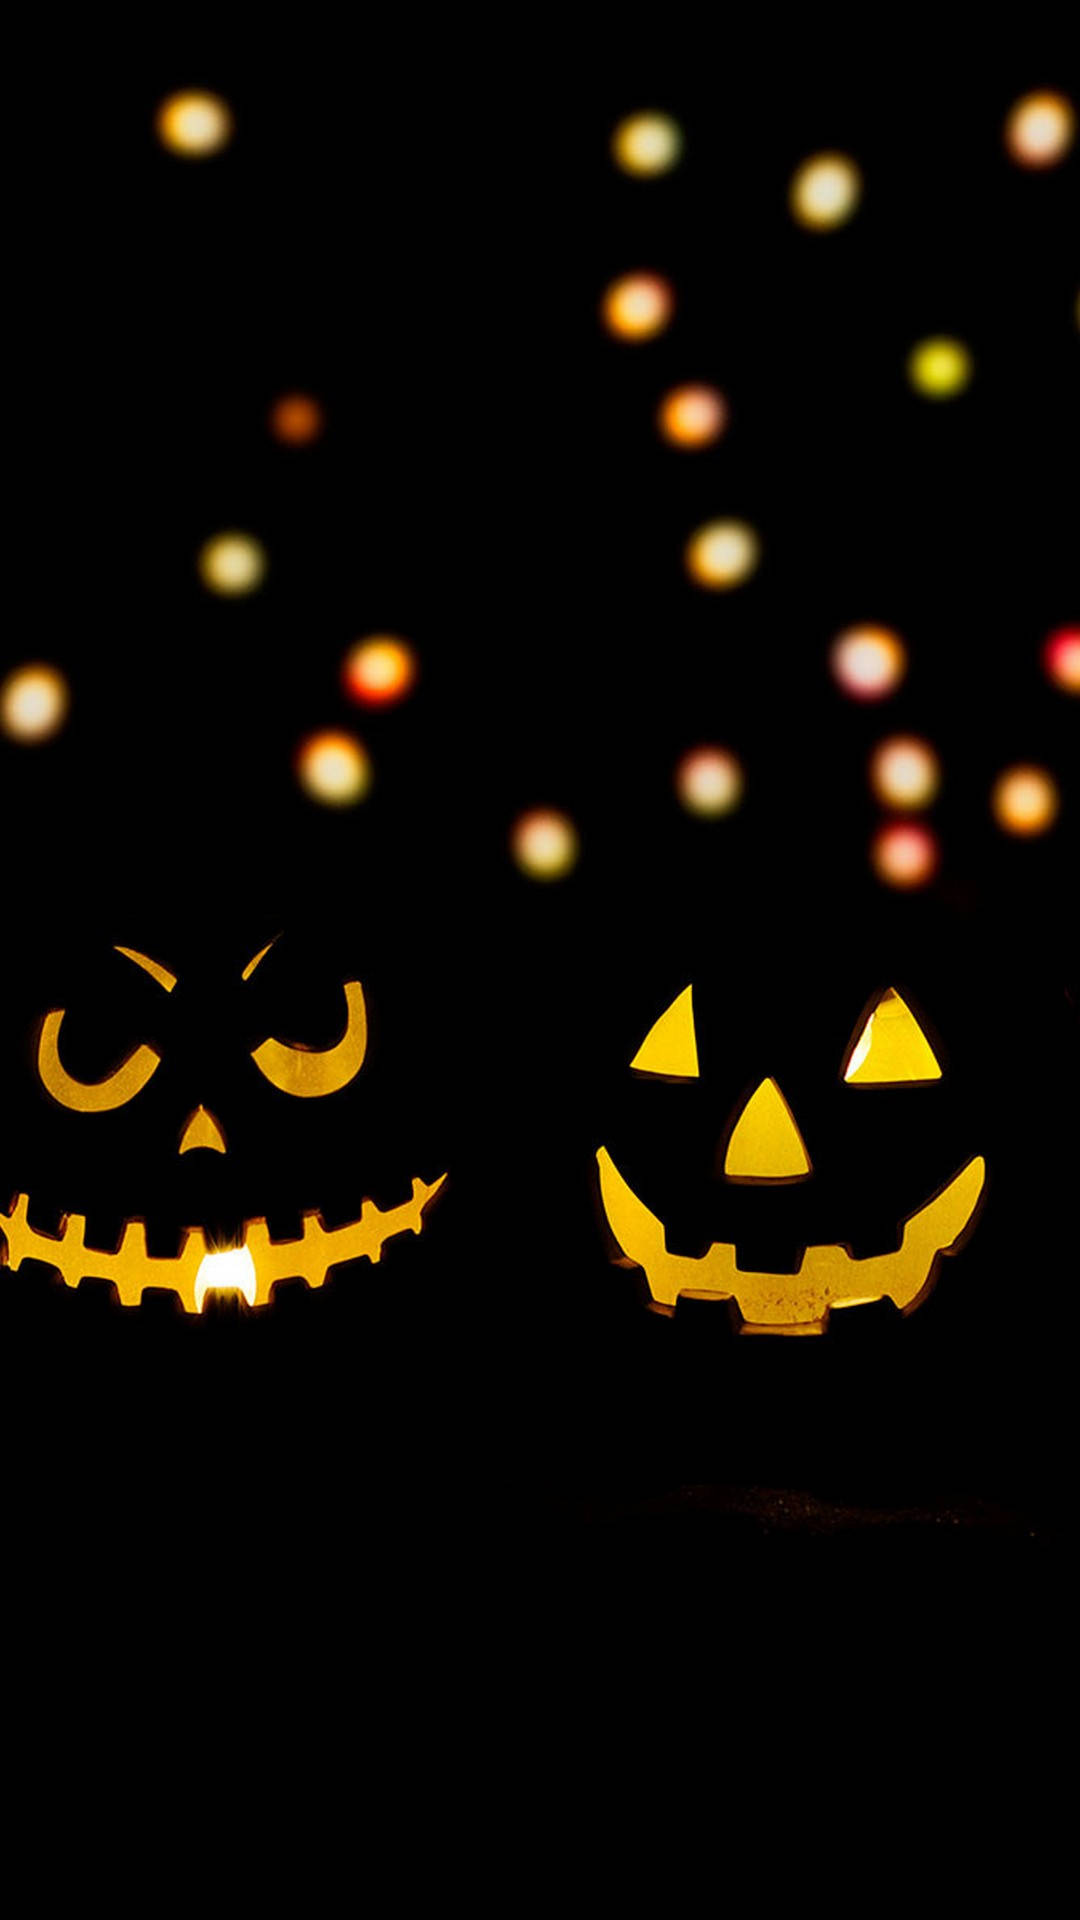 Two Pumpkins Halloween Phone Dark Background